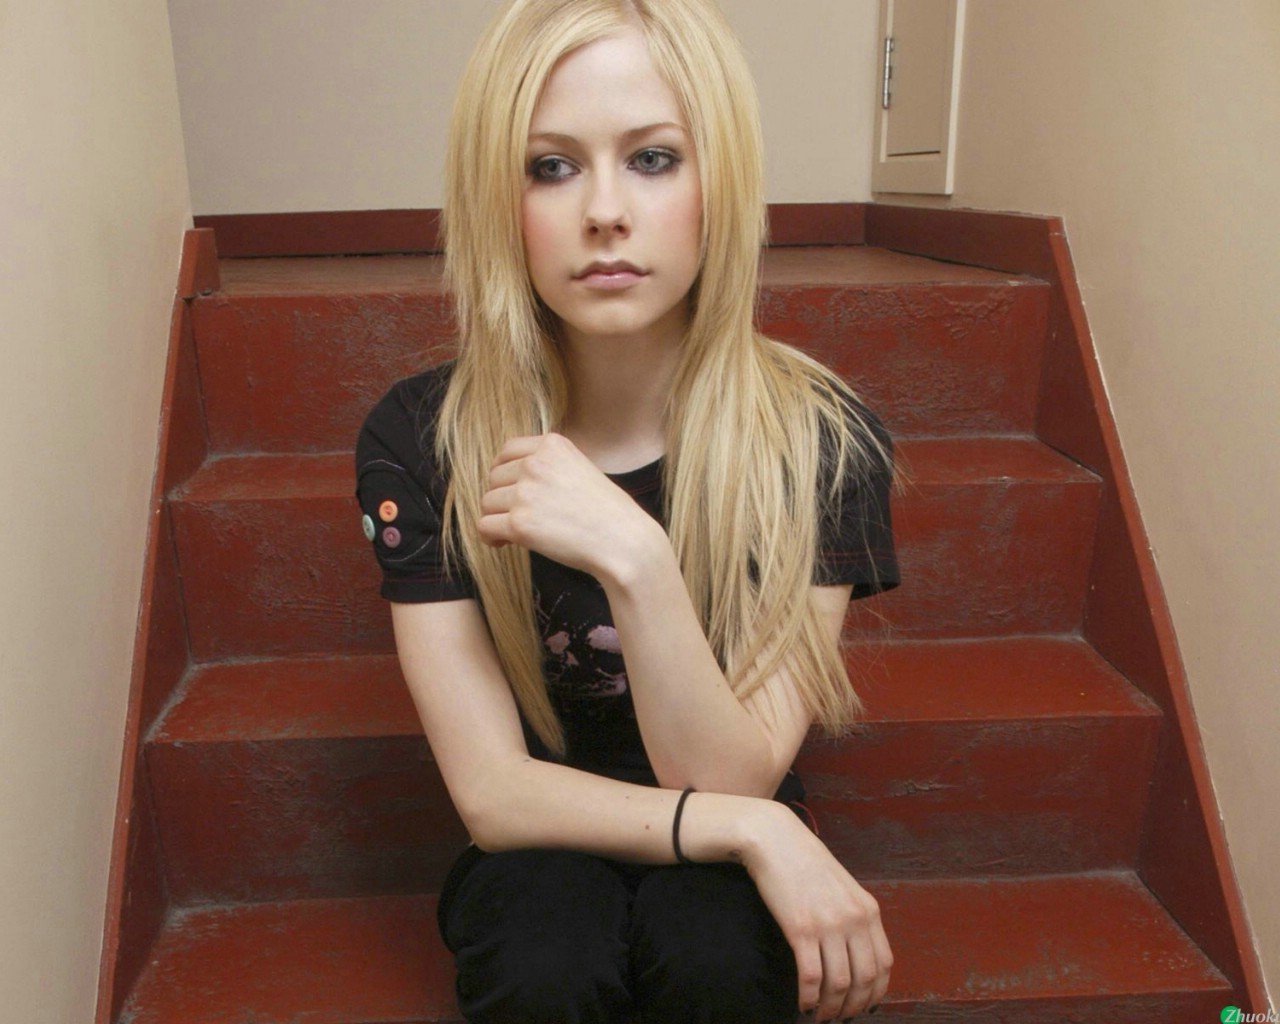 壁纸1280x1024艾薇儿 Avril Lavigne 壁纸75壁纸 艾薇儿 Avril Lavigne壁纸 艾薇儿 Avril Lavigne图片 艾薇儿 Avril Lavigne素材 明星壁纸 明星图库 明星图片素材桌面壁纸